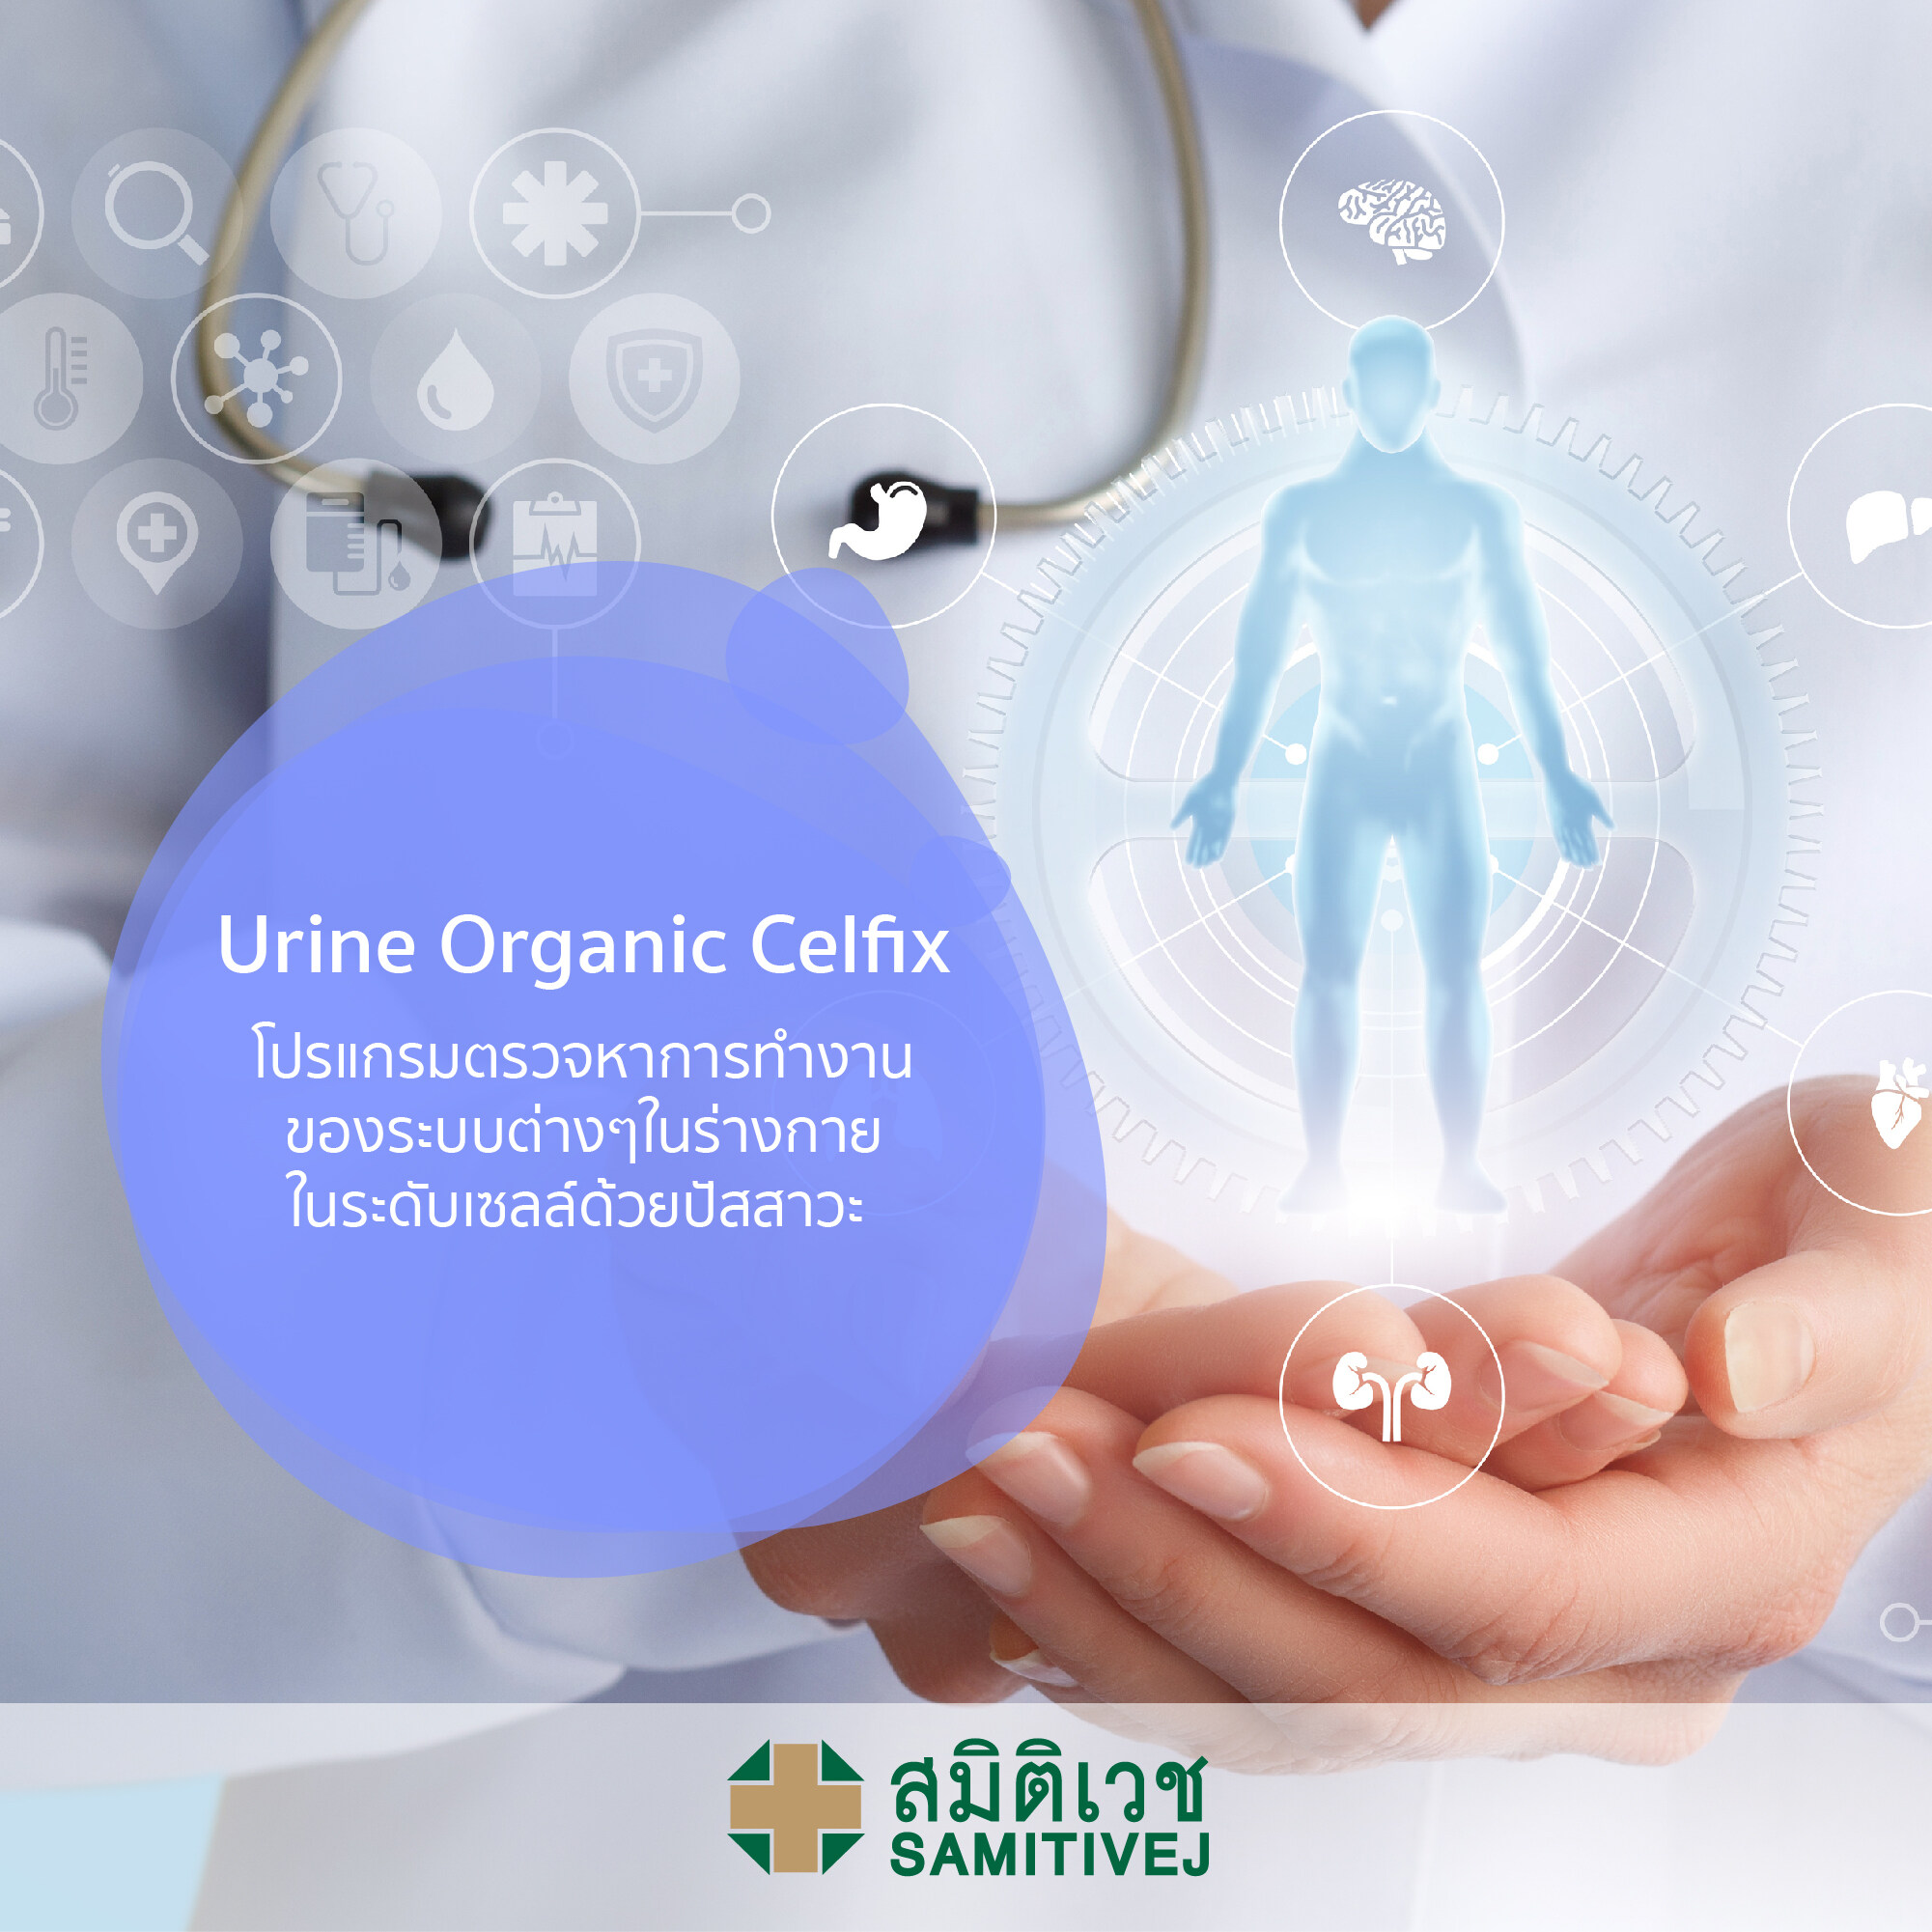 Urine Organic Celfix - โปรแกรมตรวจหาการทำงานของระบบต่างๆในร่างกายในระดับเซลล์ด้วยปัสสาวะ - สมิติเวชศรีนครินทร์